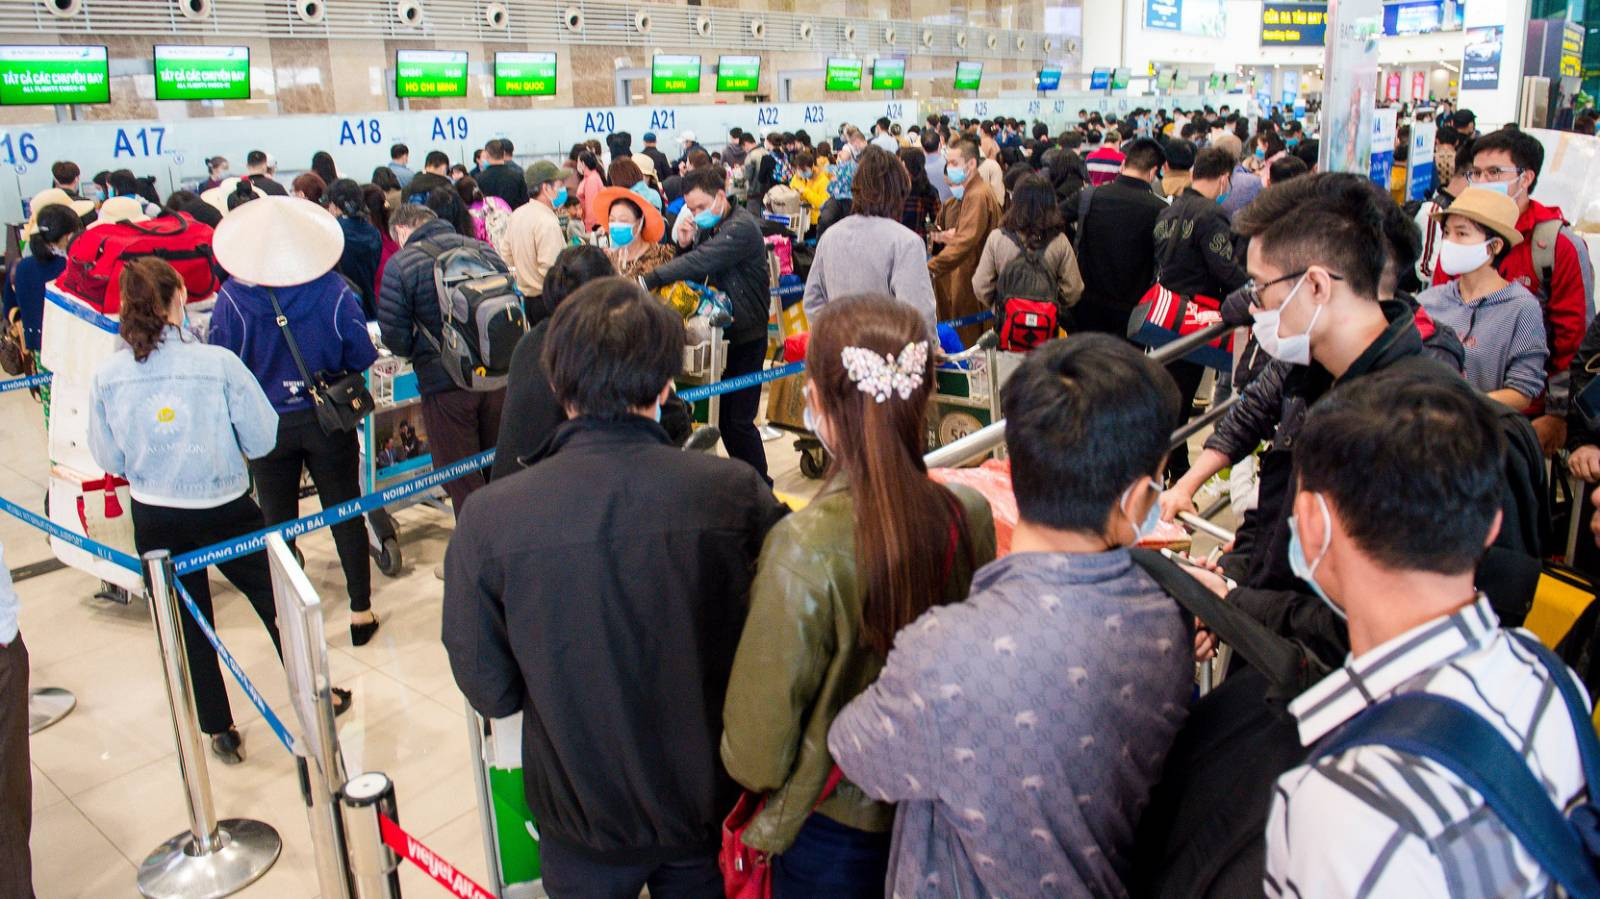 Nhu cầu di chuyển tăng vọt, hàng không Việt liên tiếp mở mới đường bay trước thềm nghỉ lễ